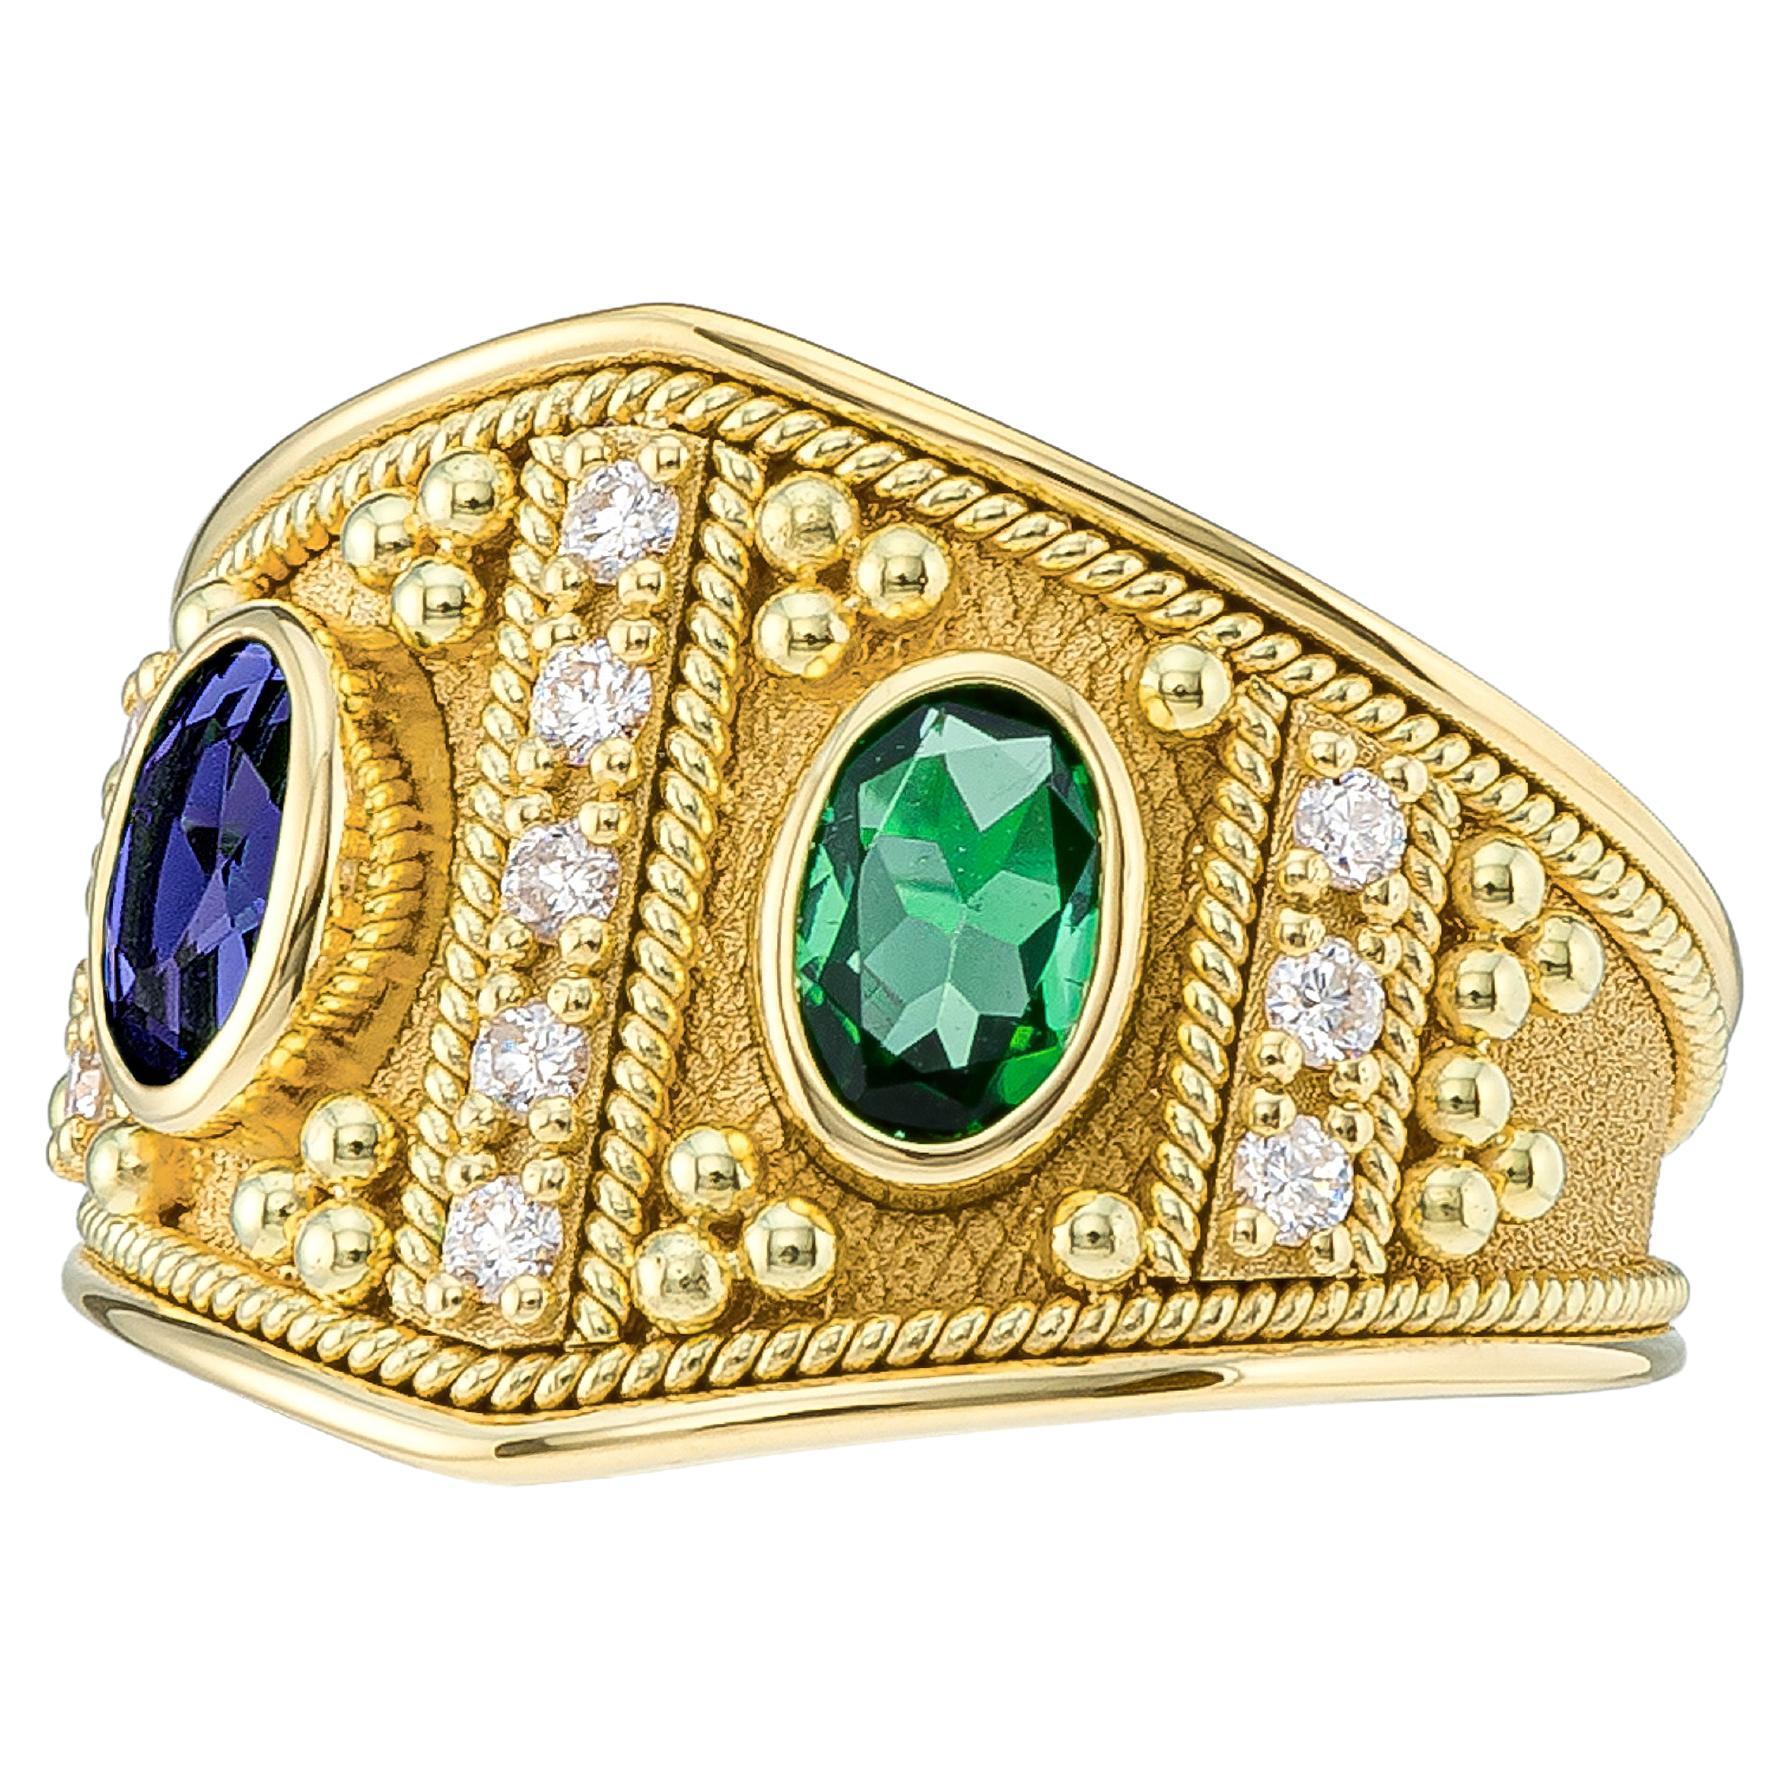 Goldring mit byzantinischem Smaragd und Saphir